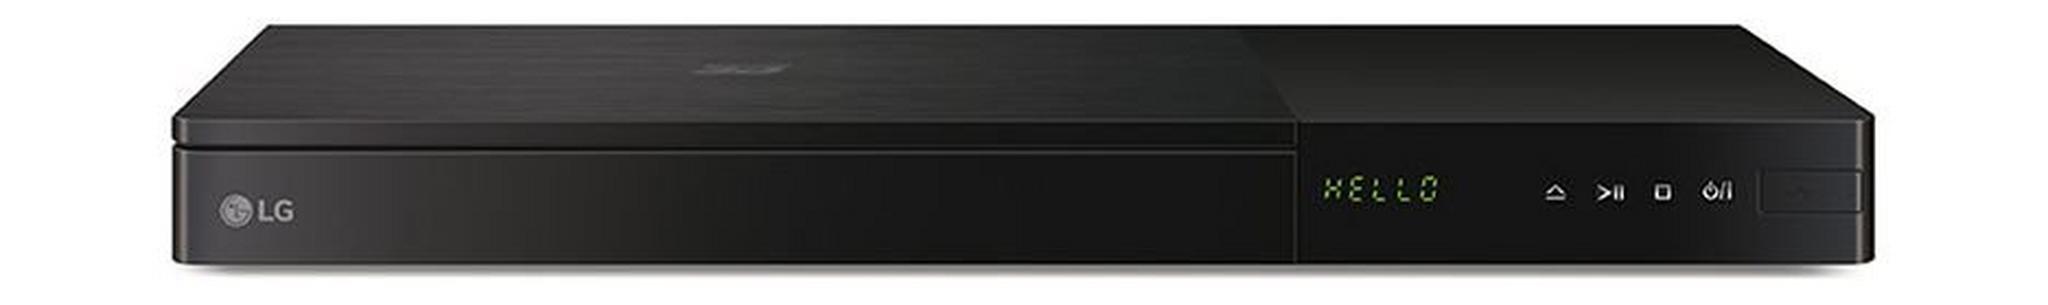 LG 3D Smart 4K Blu-ray Player (BP736)